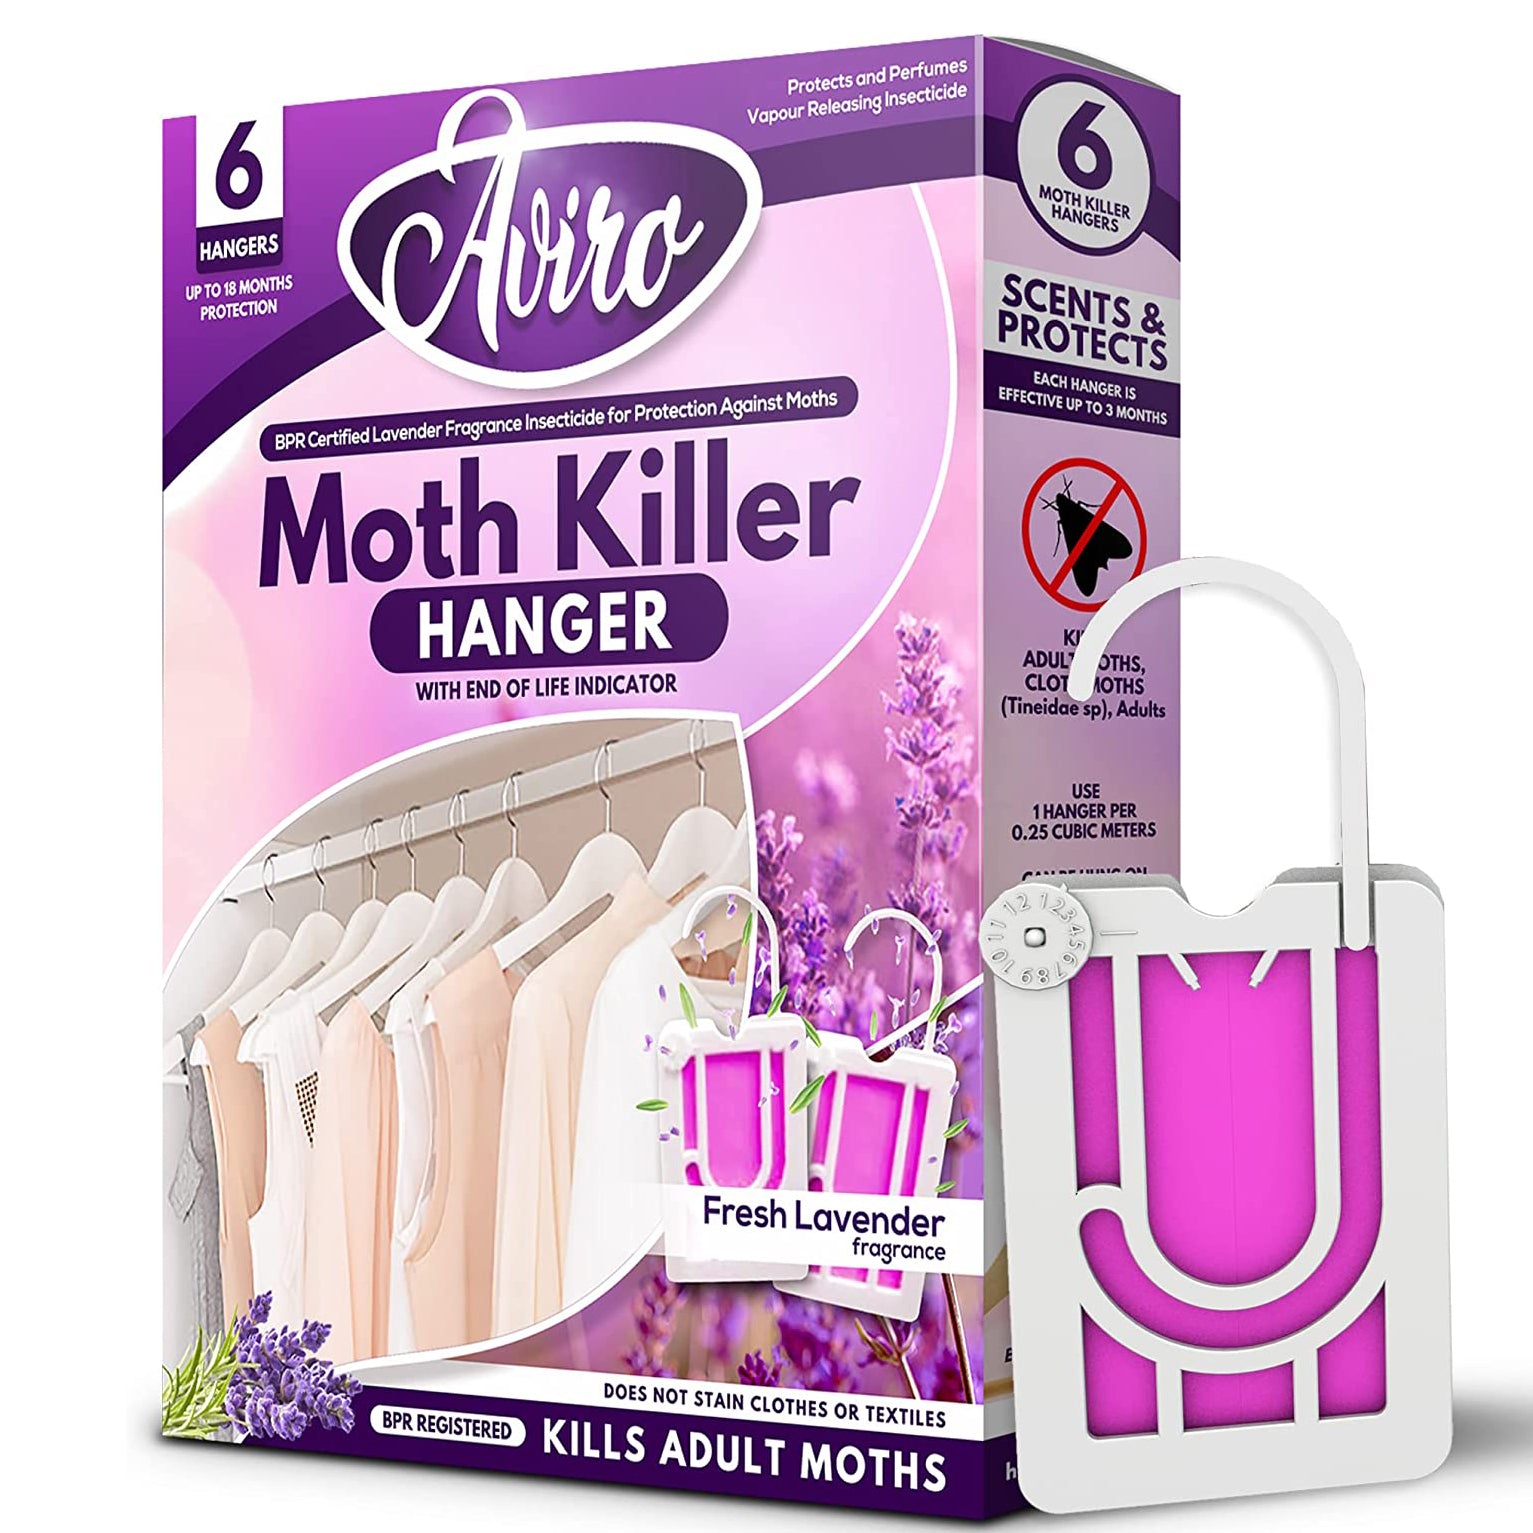 Natural Clothes Moth Killer - Essential Oil of Lavander Freshner. Stock  Image - Image of metal, fashion: 117950407